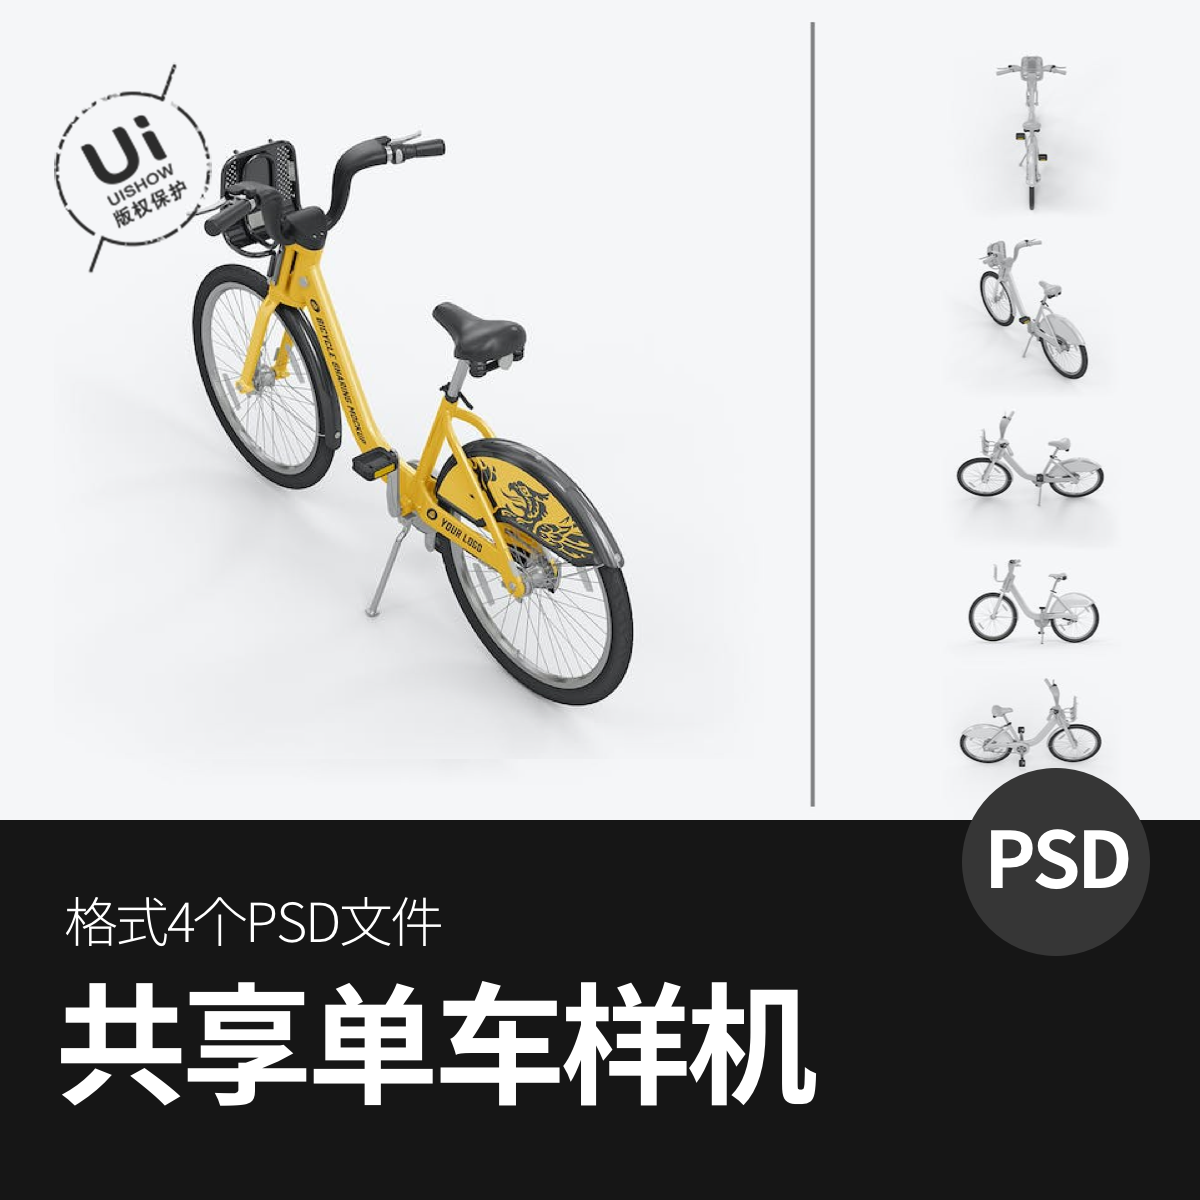 共享单车自行车vi智能展示贴图样机模板模型效果图psd设计素材